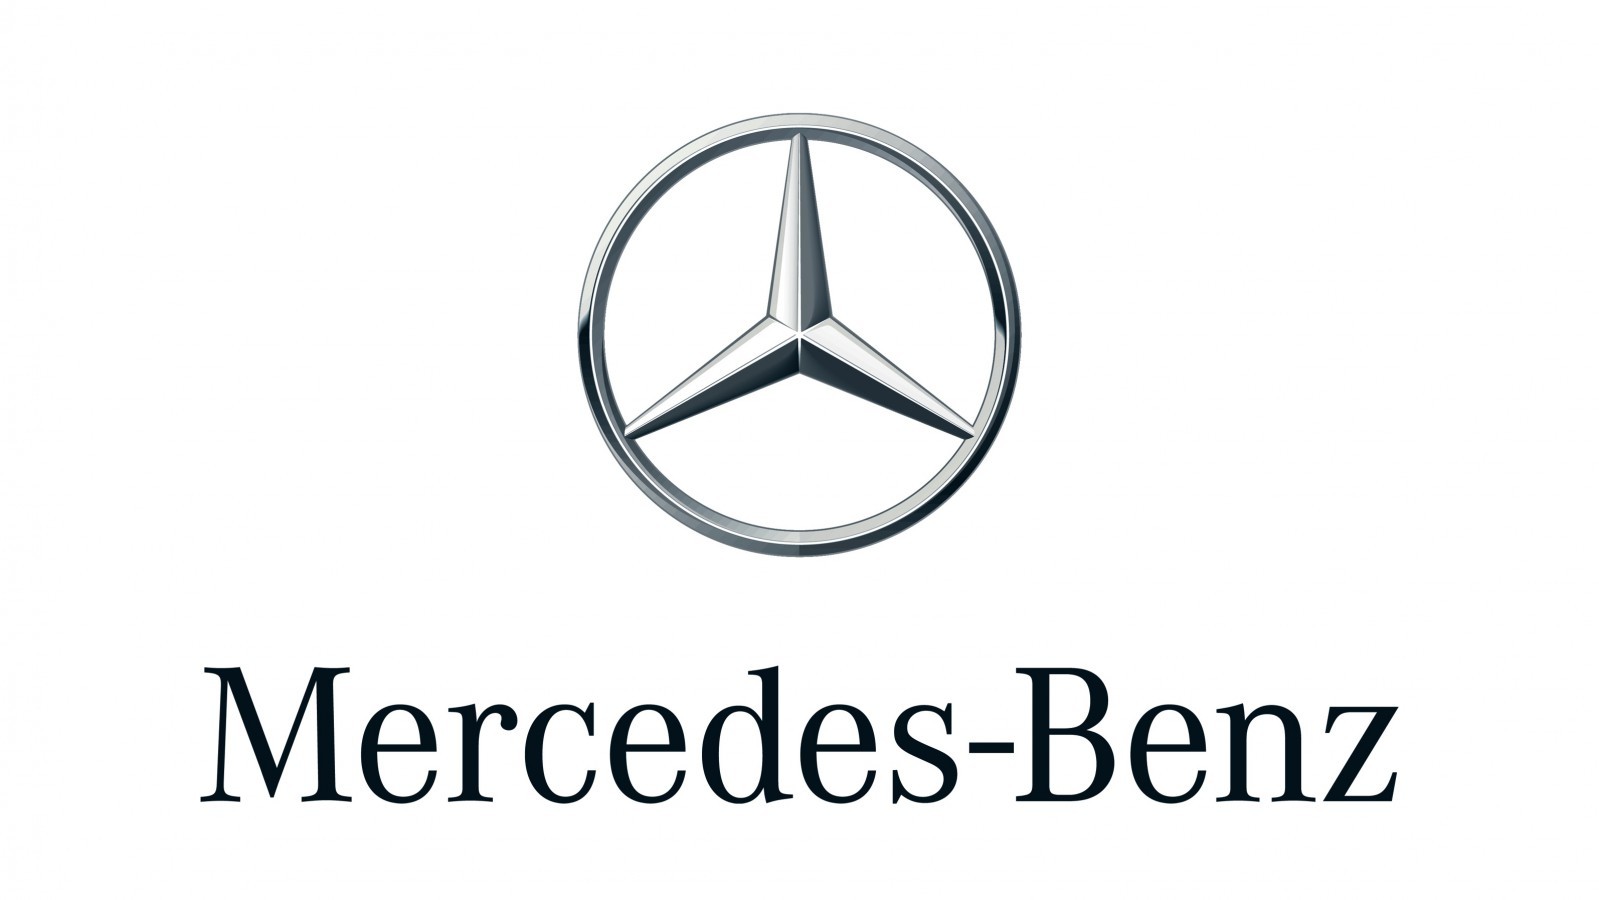 Mercedes-Benz A-class Concept